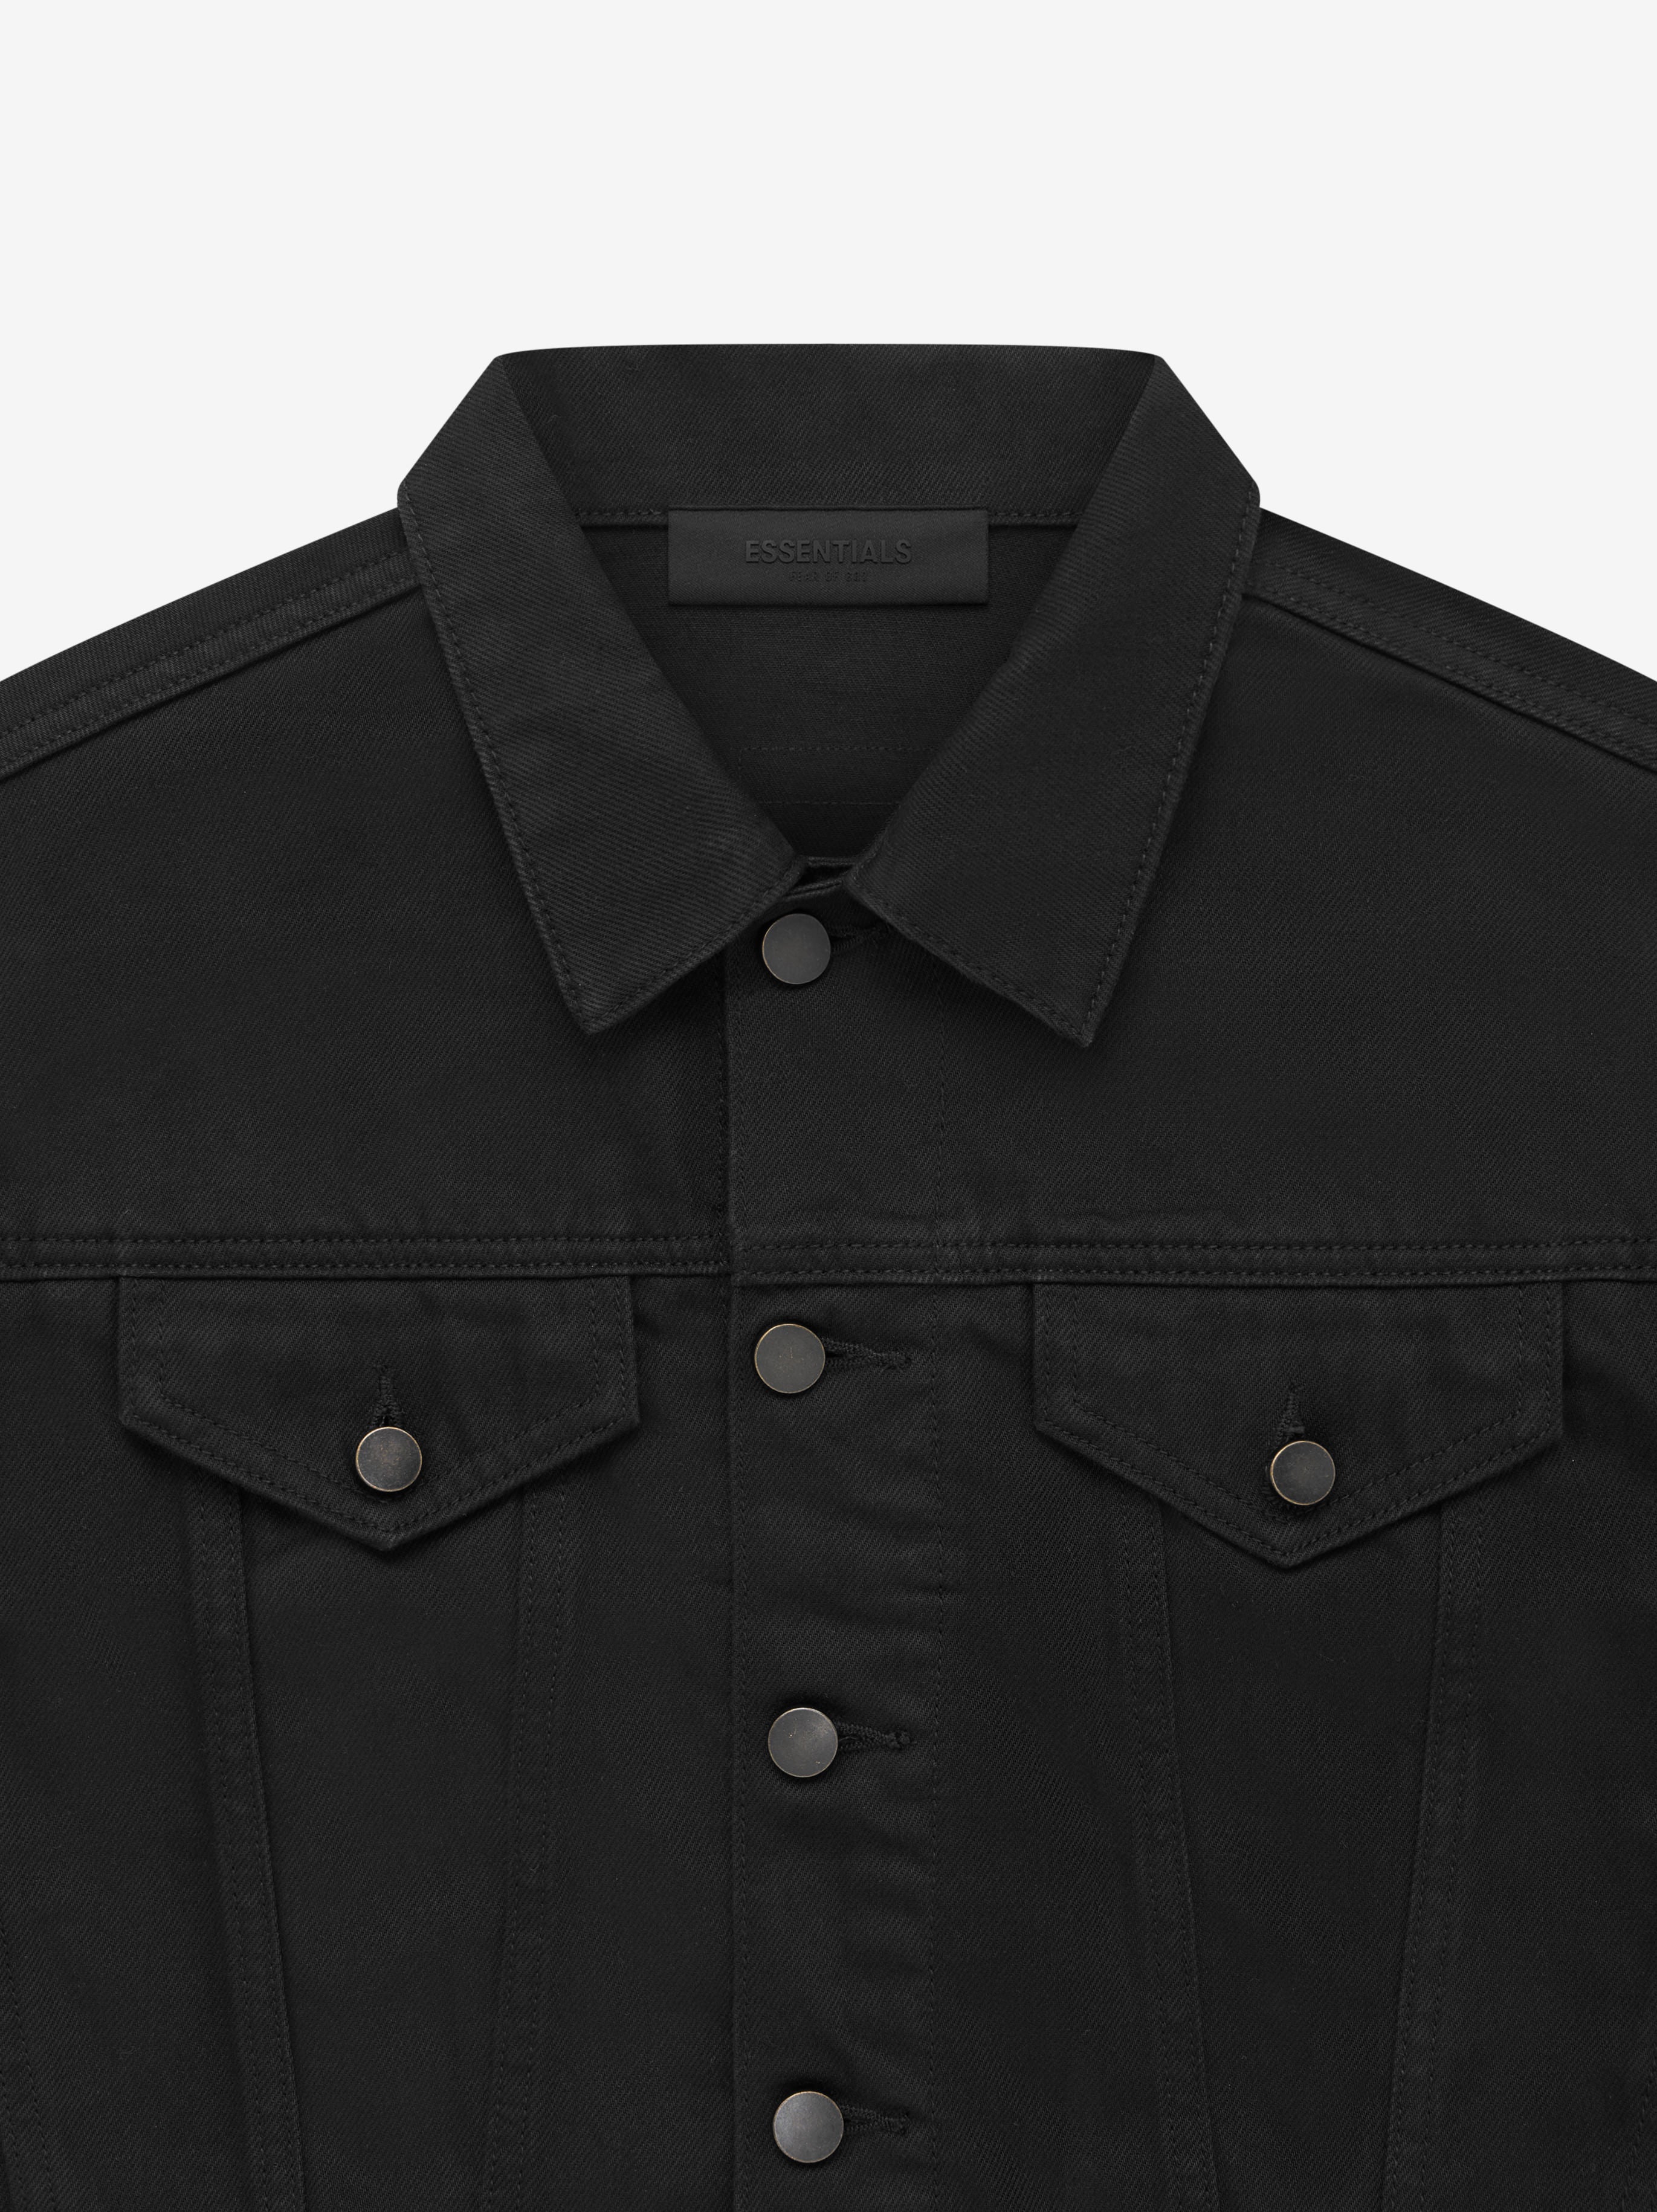 メール便不可】 FOG Essentials Black Denim Jacket Gジャン/デニム